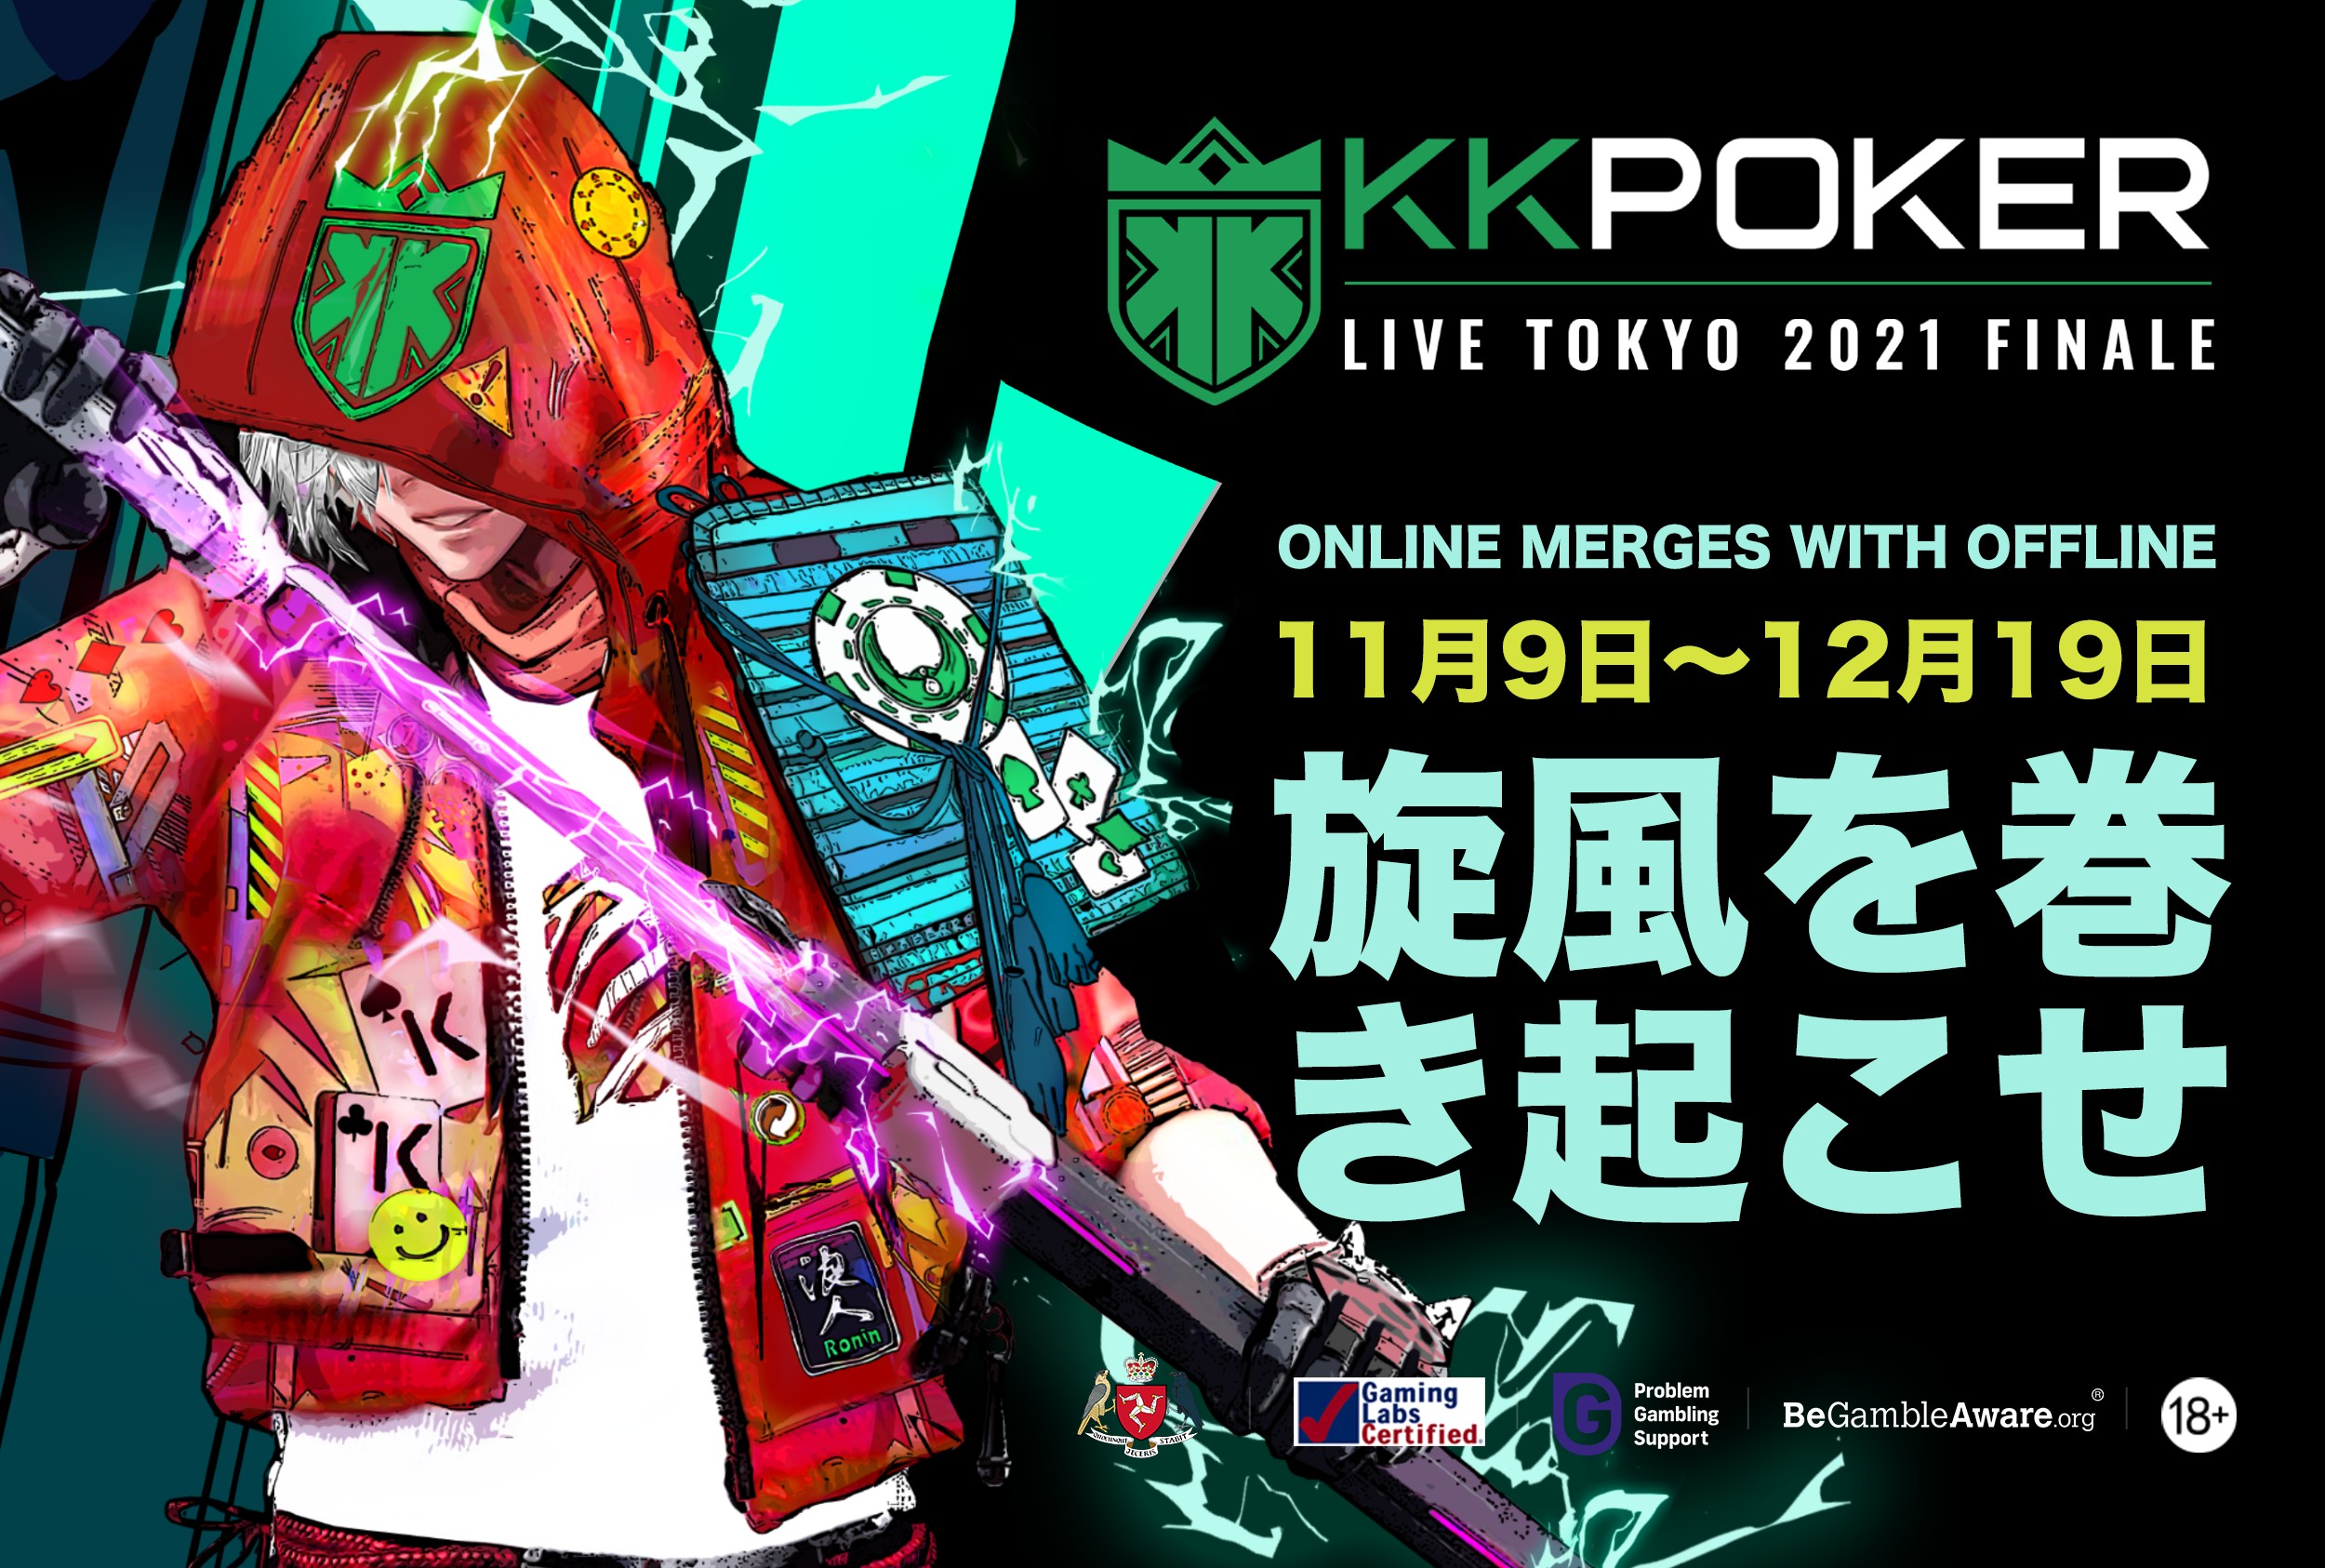 KKPOKER LIVE TOKYO 2021 FINALE